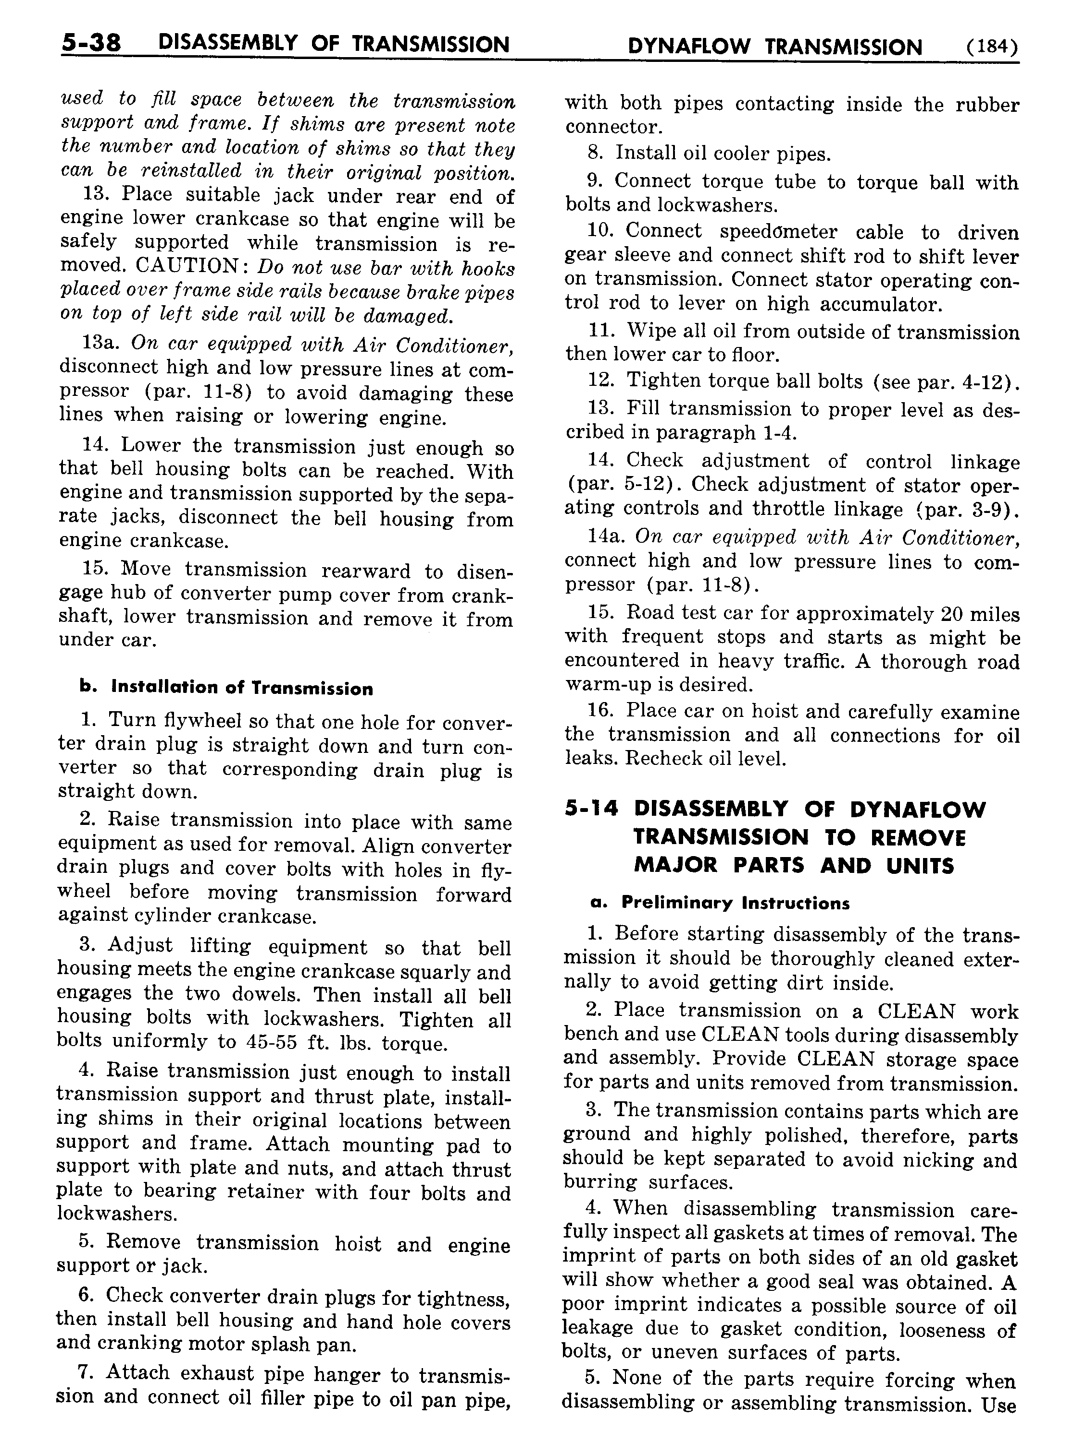 n_06 1956 Buick Shop Manual - Dynaflow-038-038.jpg